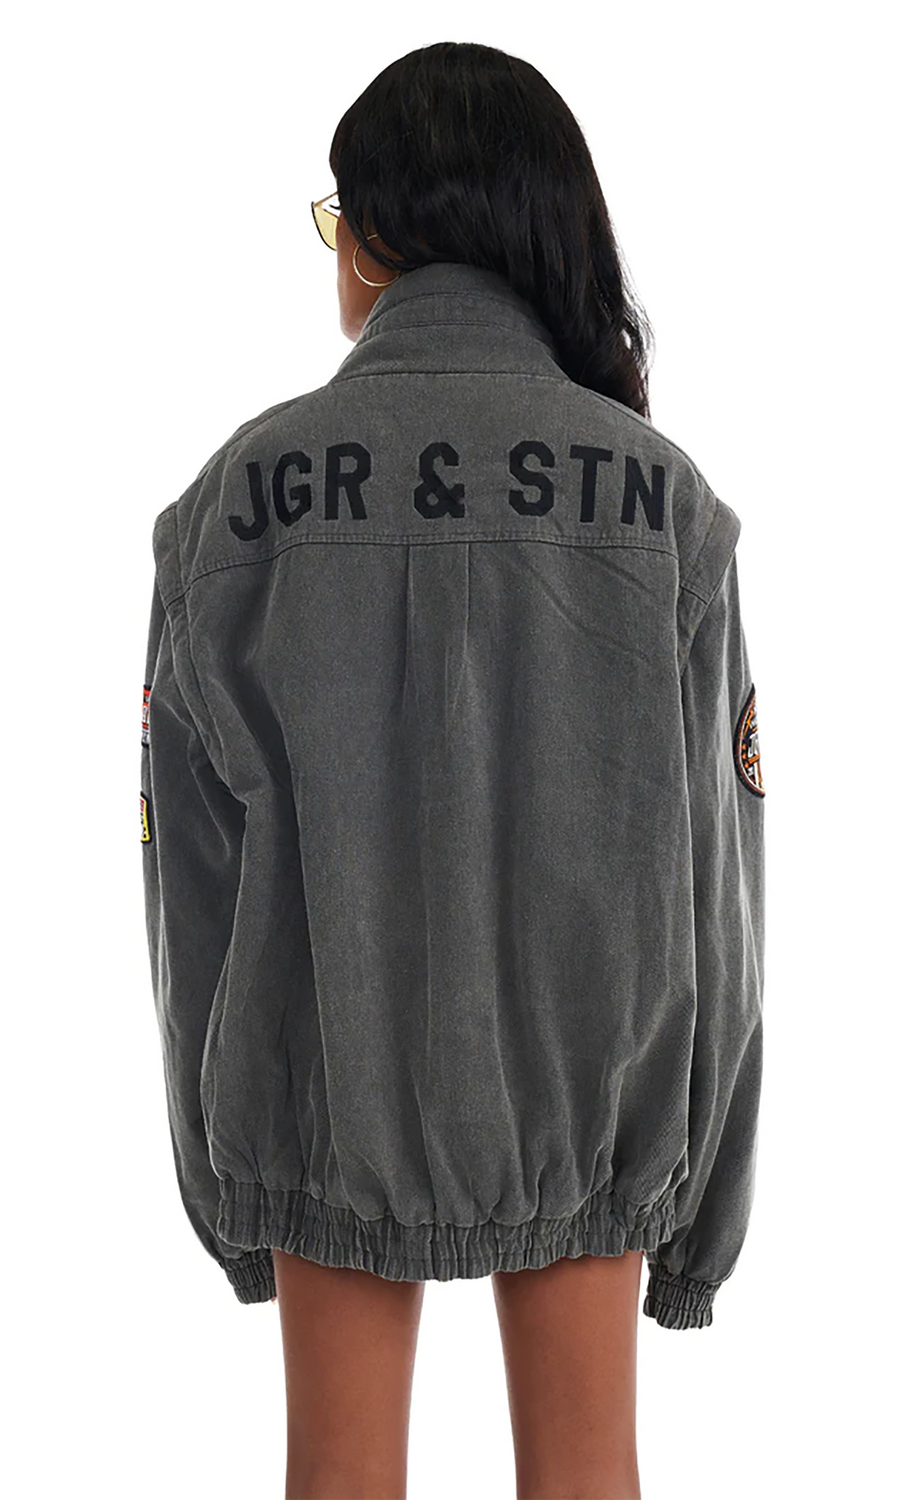 Davidson Jacket by JGR & STN - ONLINE EXCLUSIVE